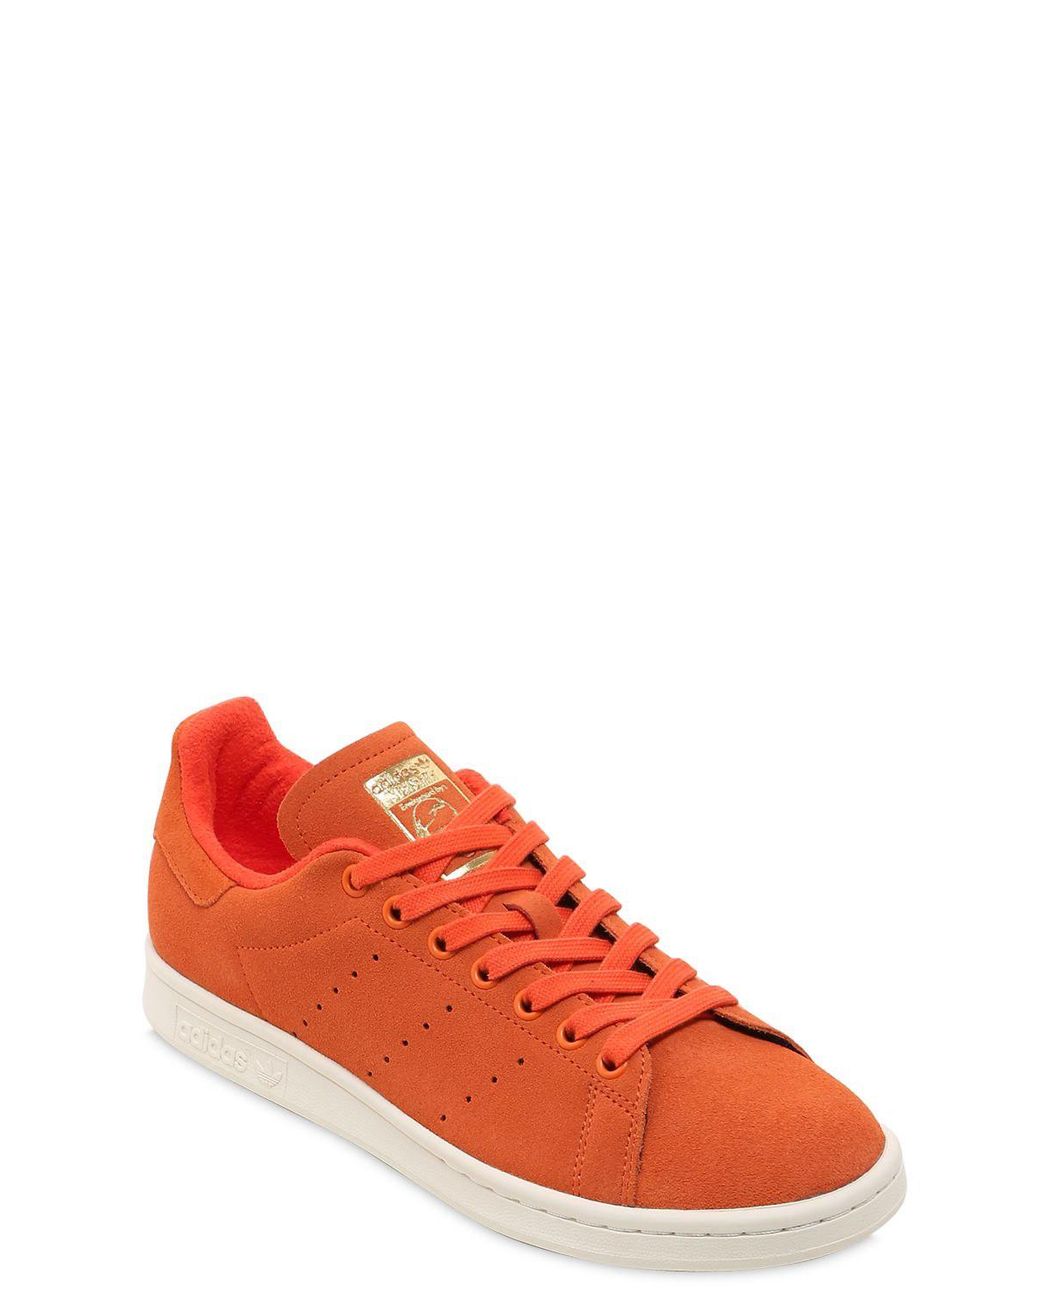 adidas Originals Stan Smith Suede Sneakers in Orange for Men | Lyst UK